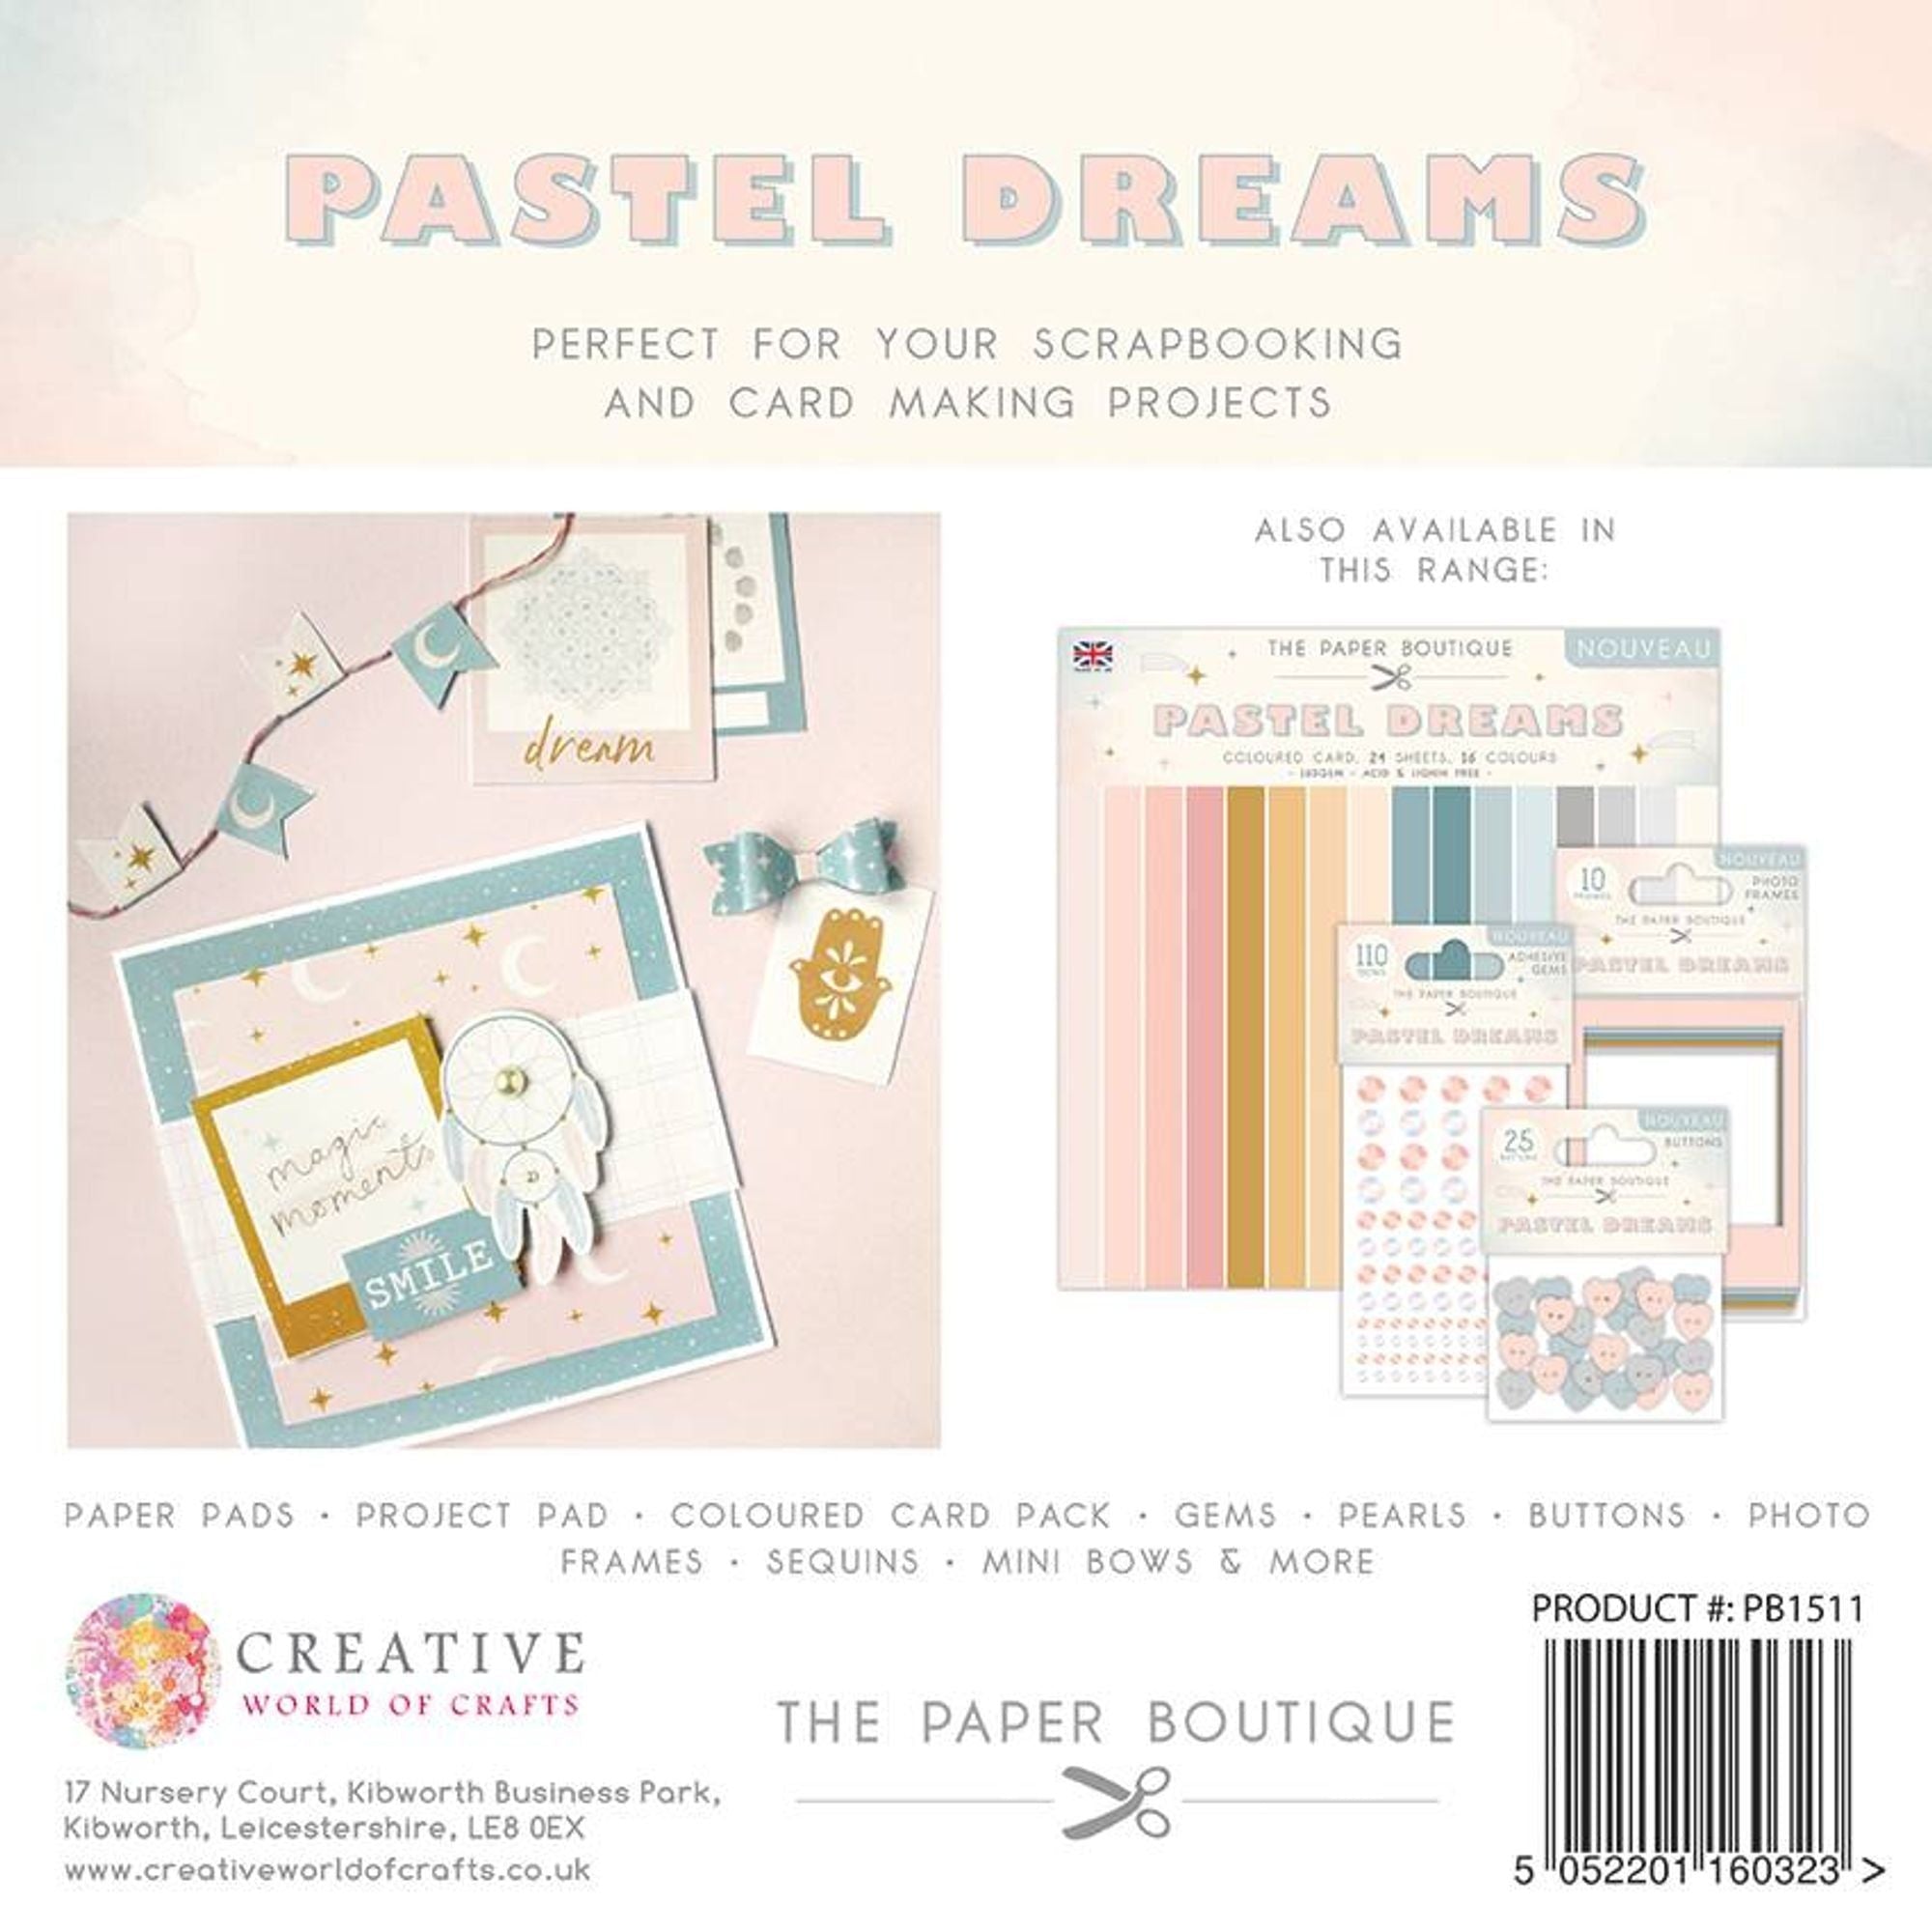 The Paper Boutique Pastel Dreams 12x12 Paper Pad